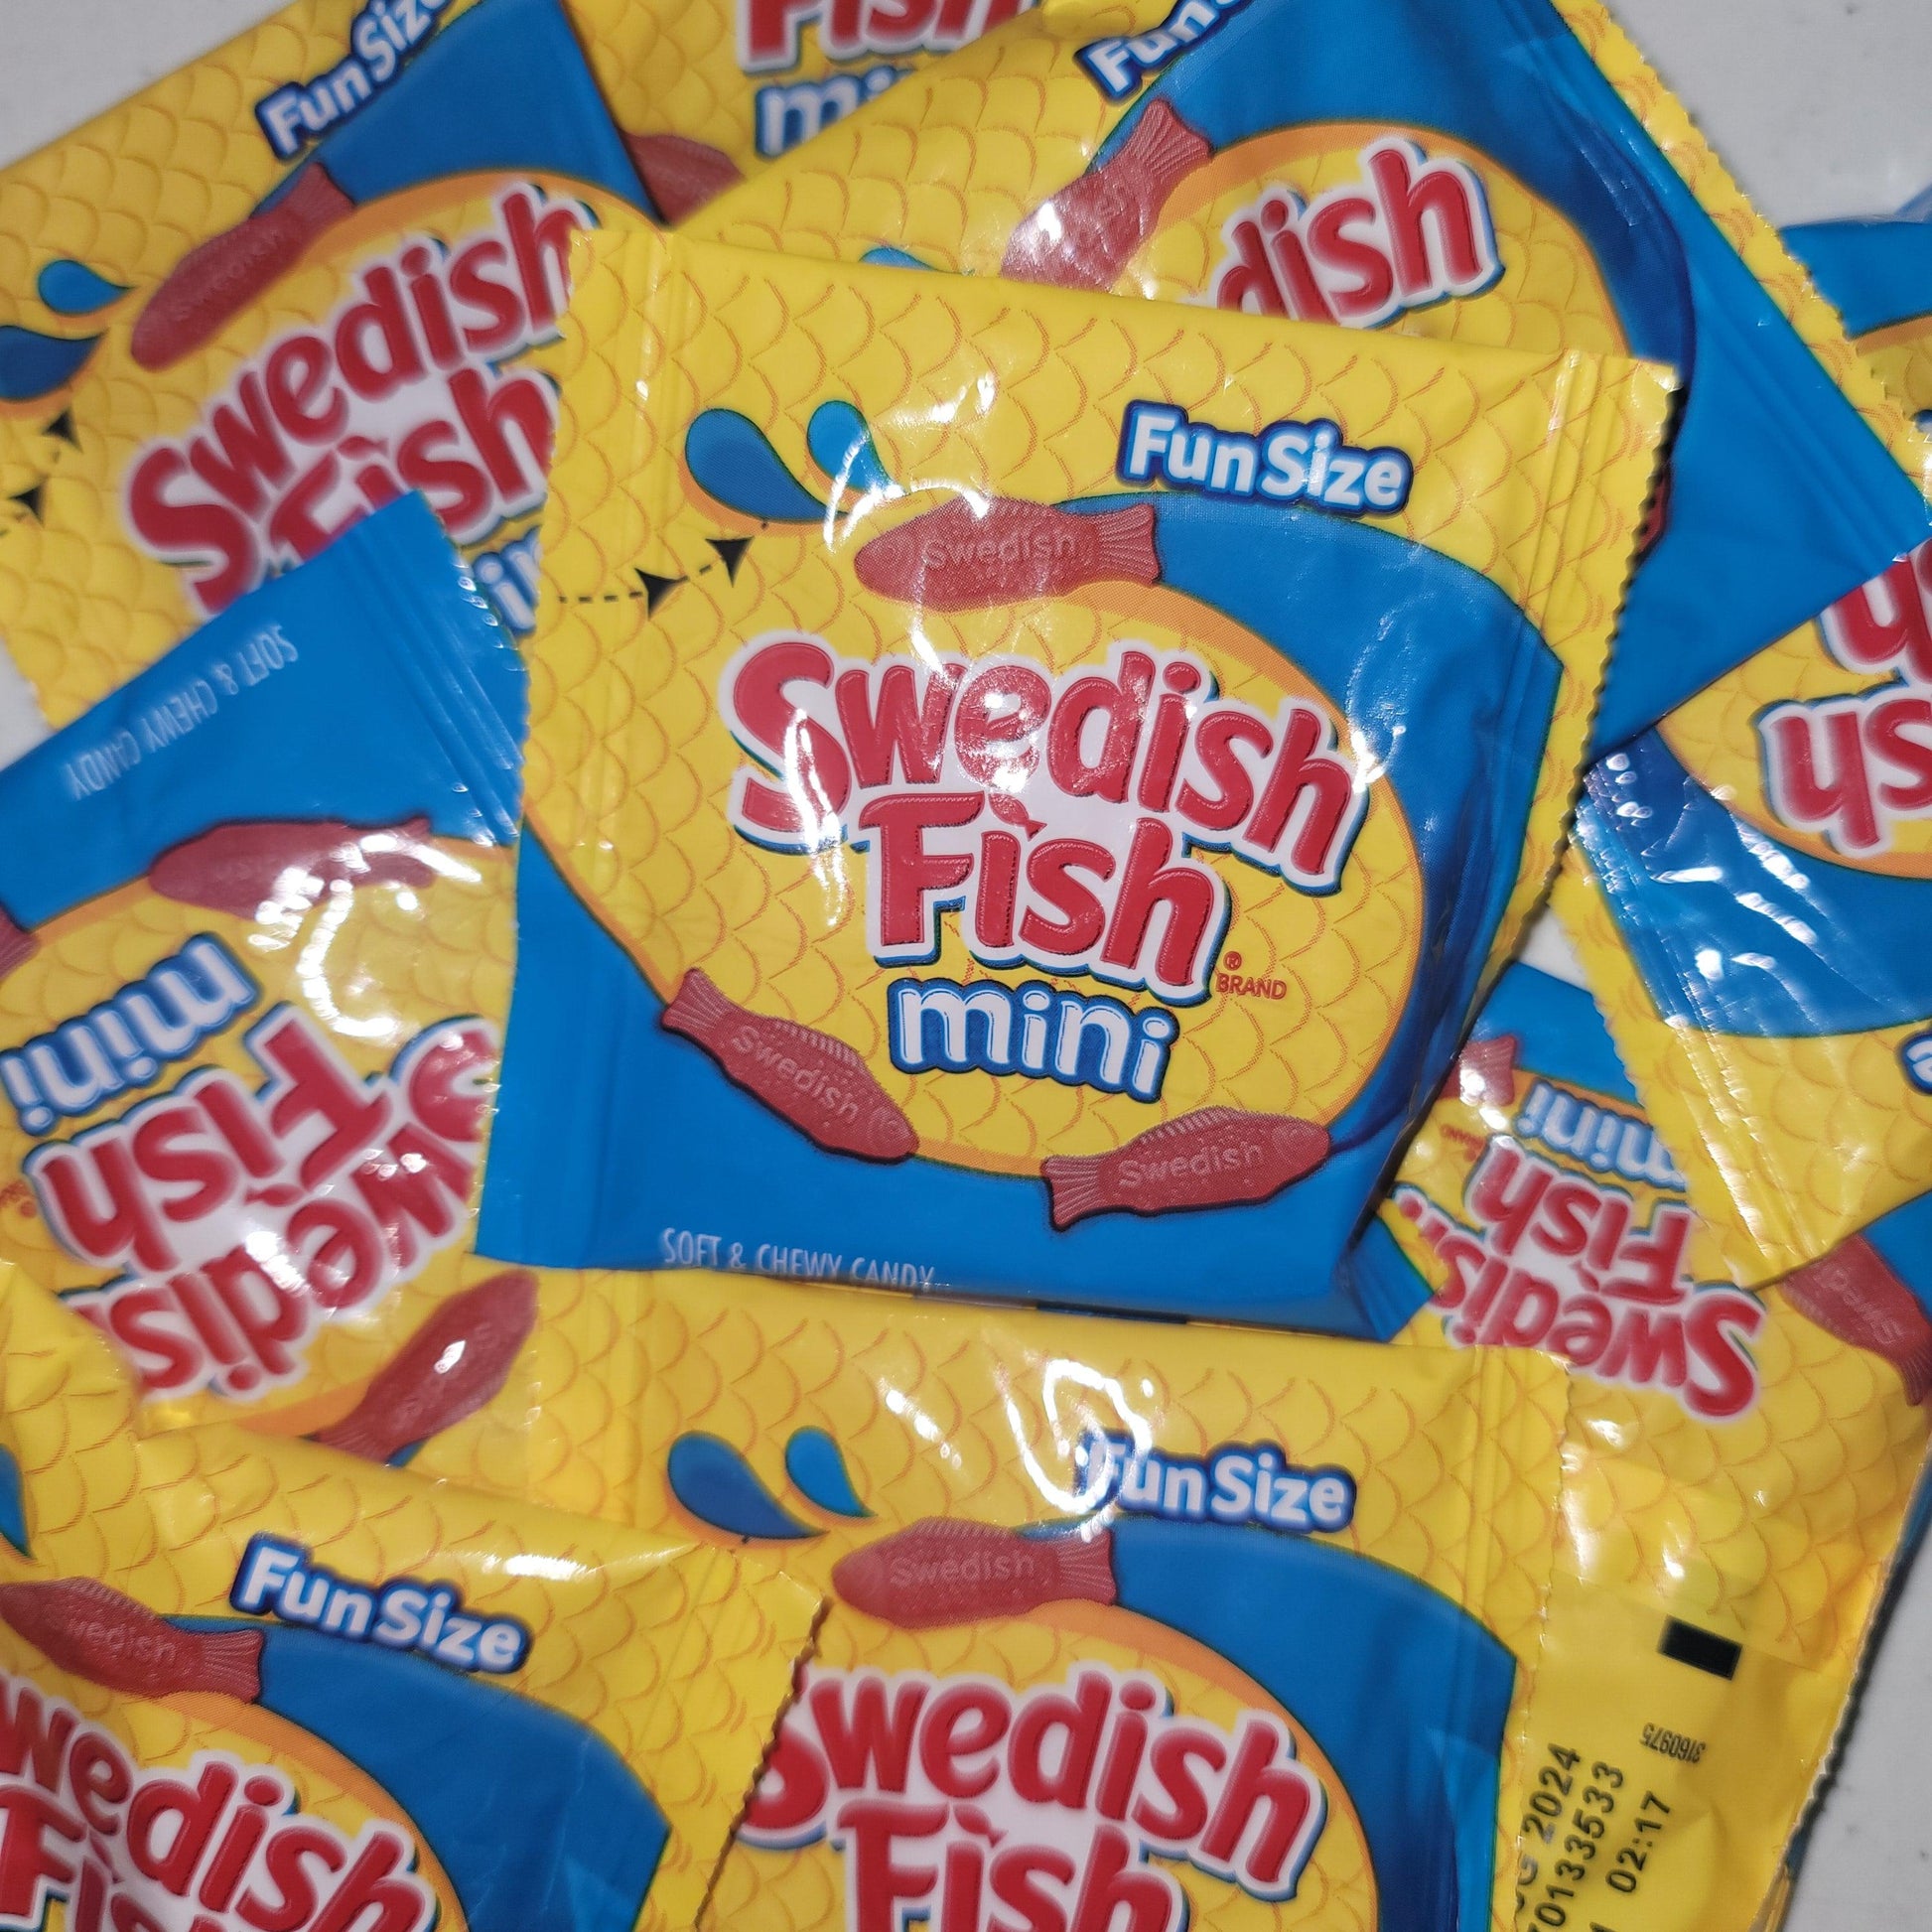 Bag of 10 Swedish Fish Fun Size